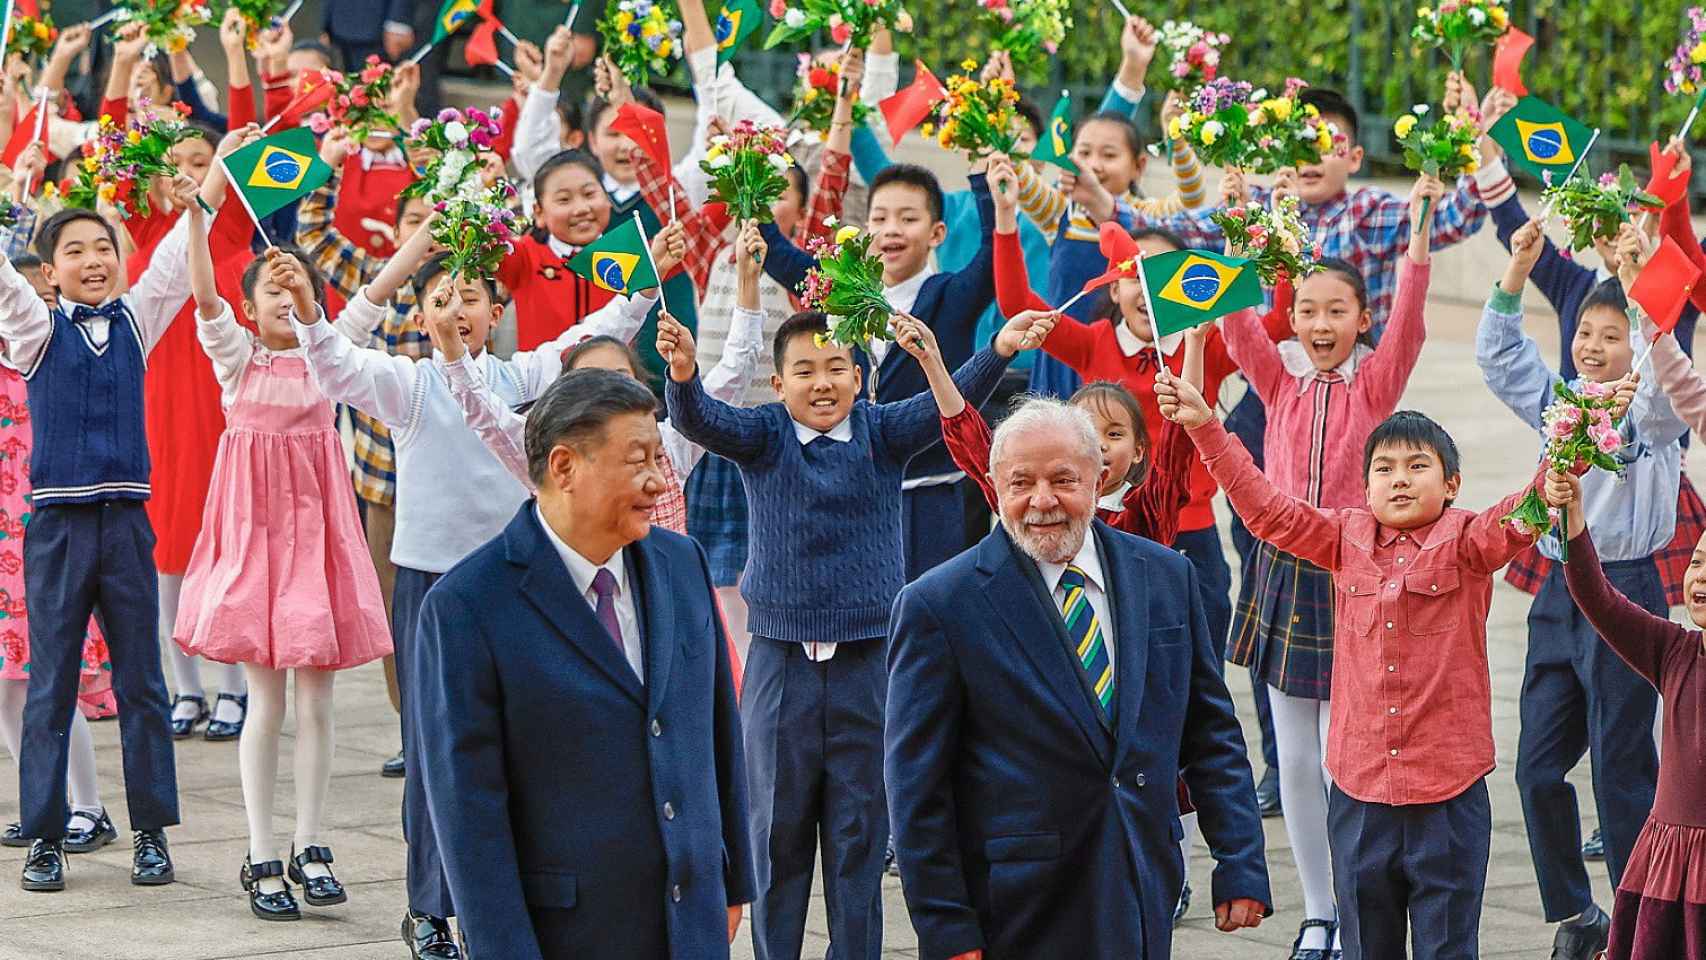 Los presidentes chino y brasileño desfilan acompañados por un espectáculo infantil.